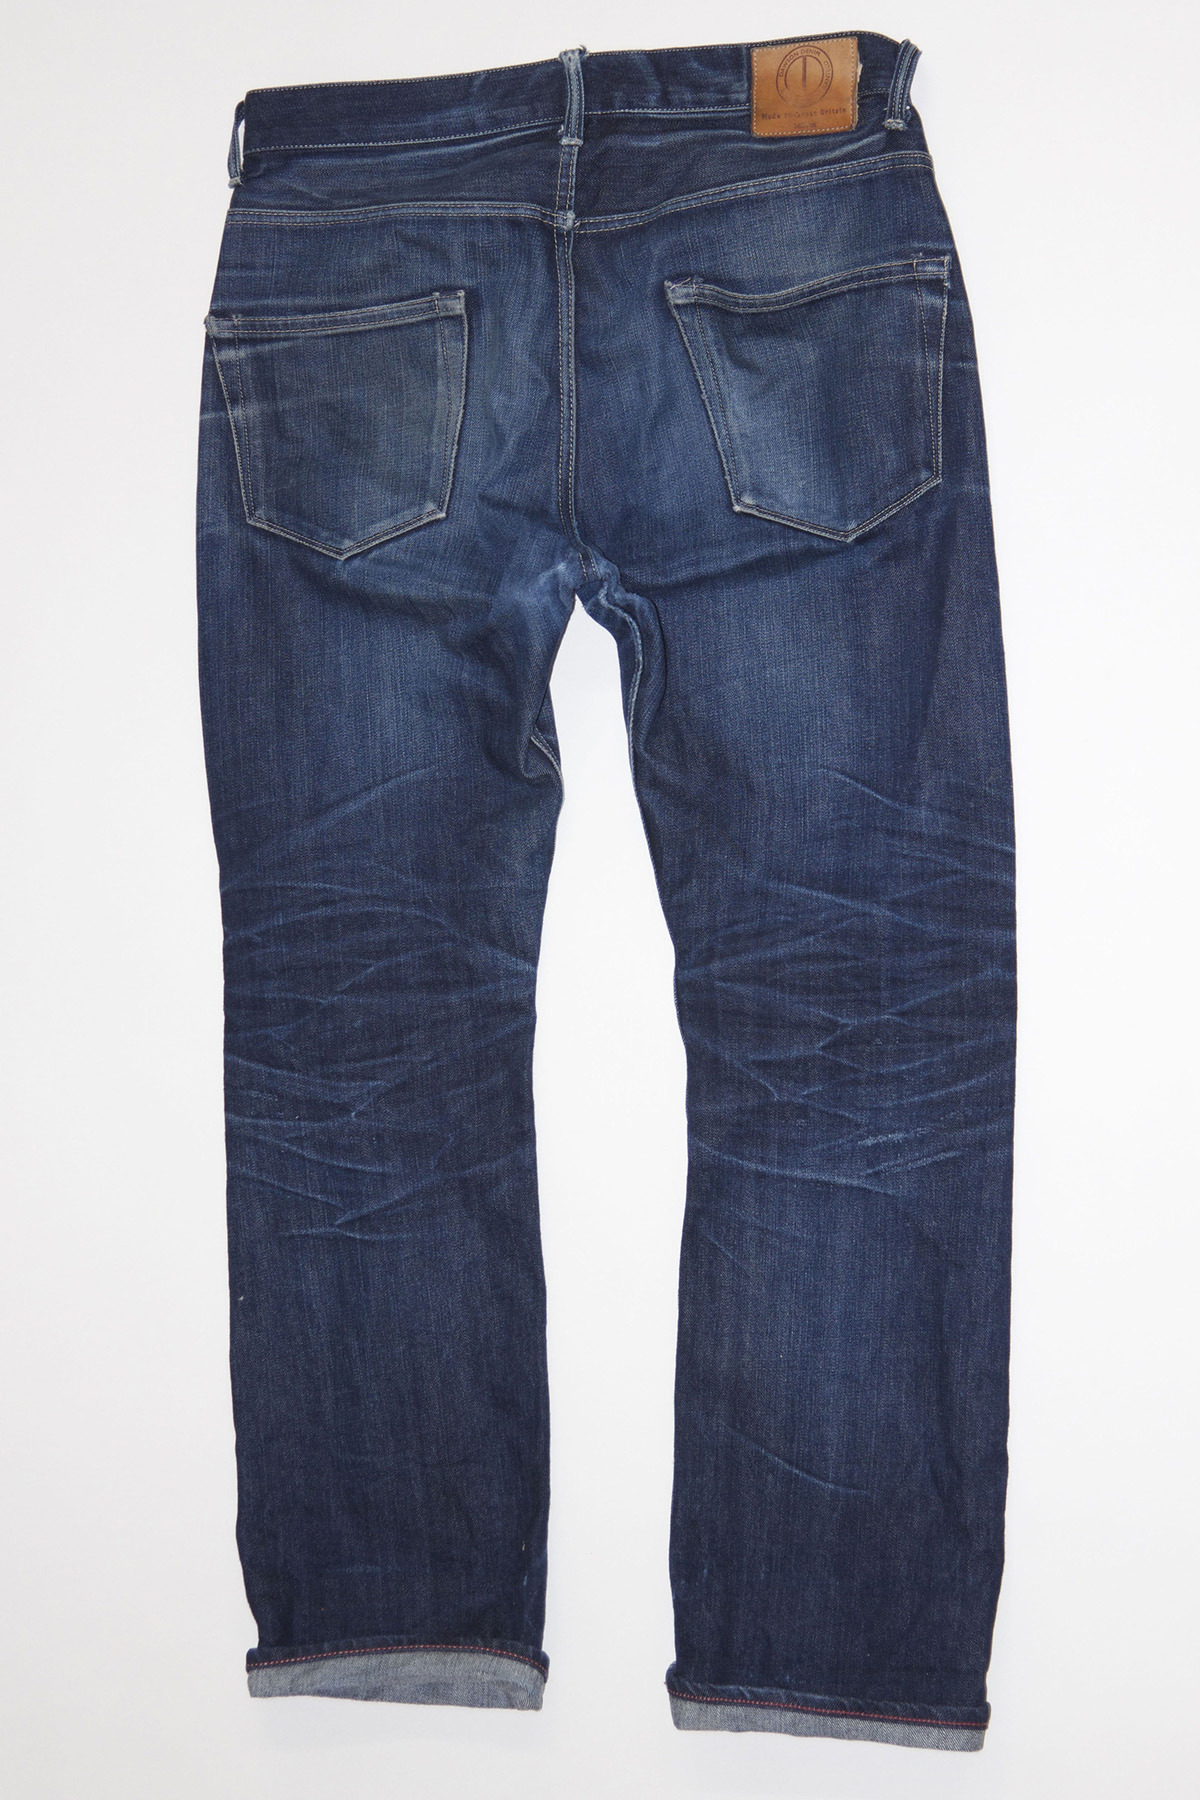 Dawson Denim — This pair of Dawson Denim jeans was owned by Kenny...